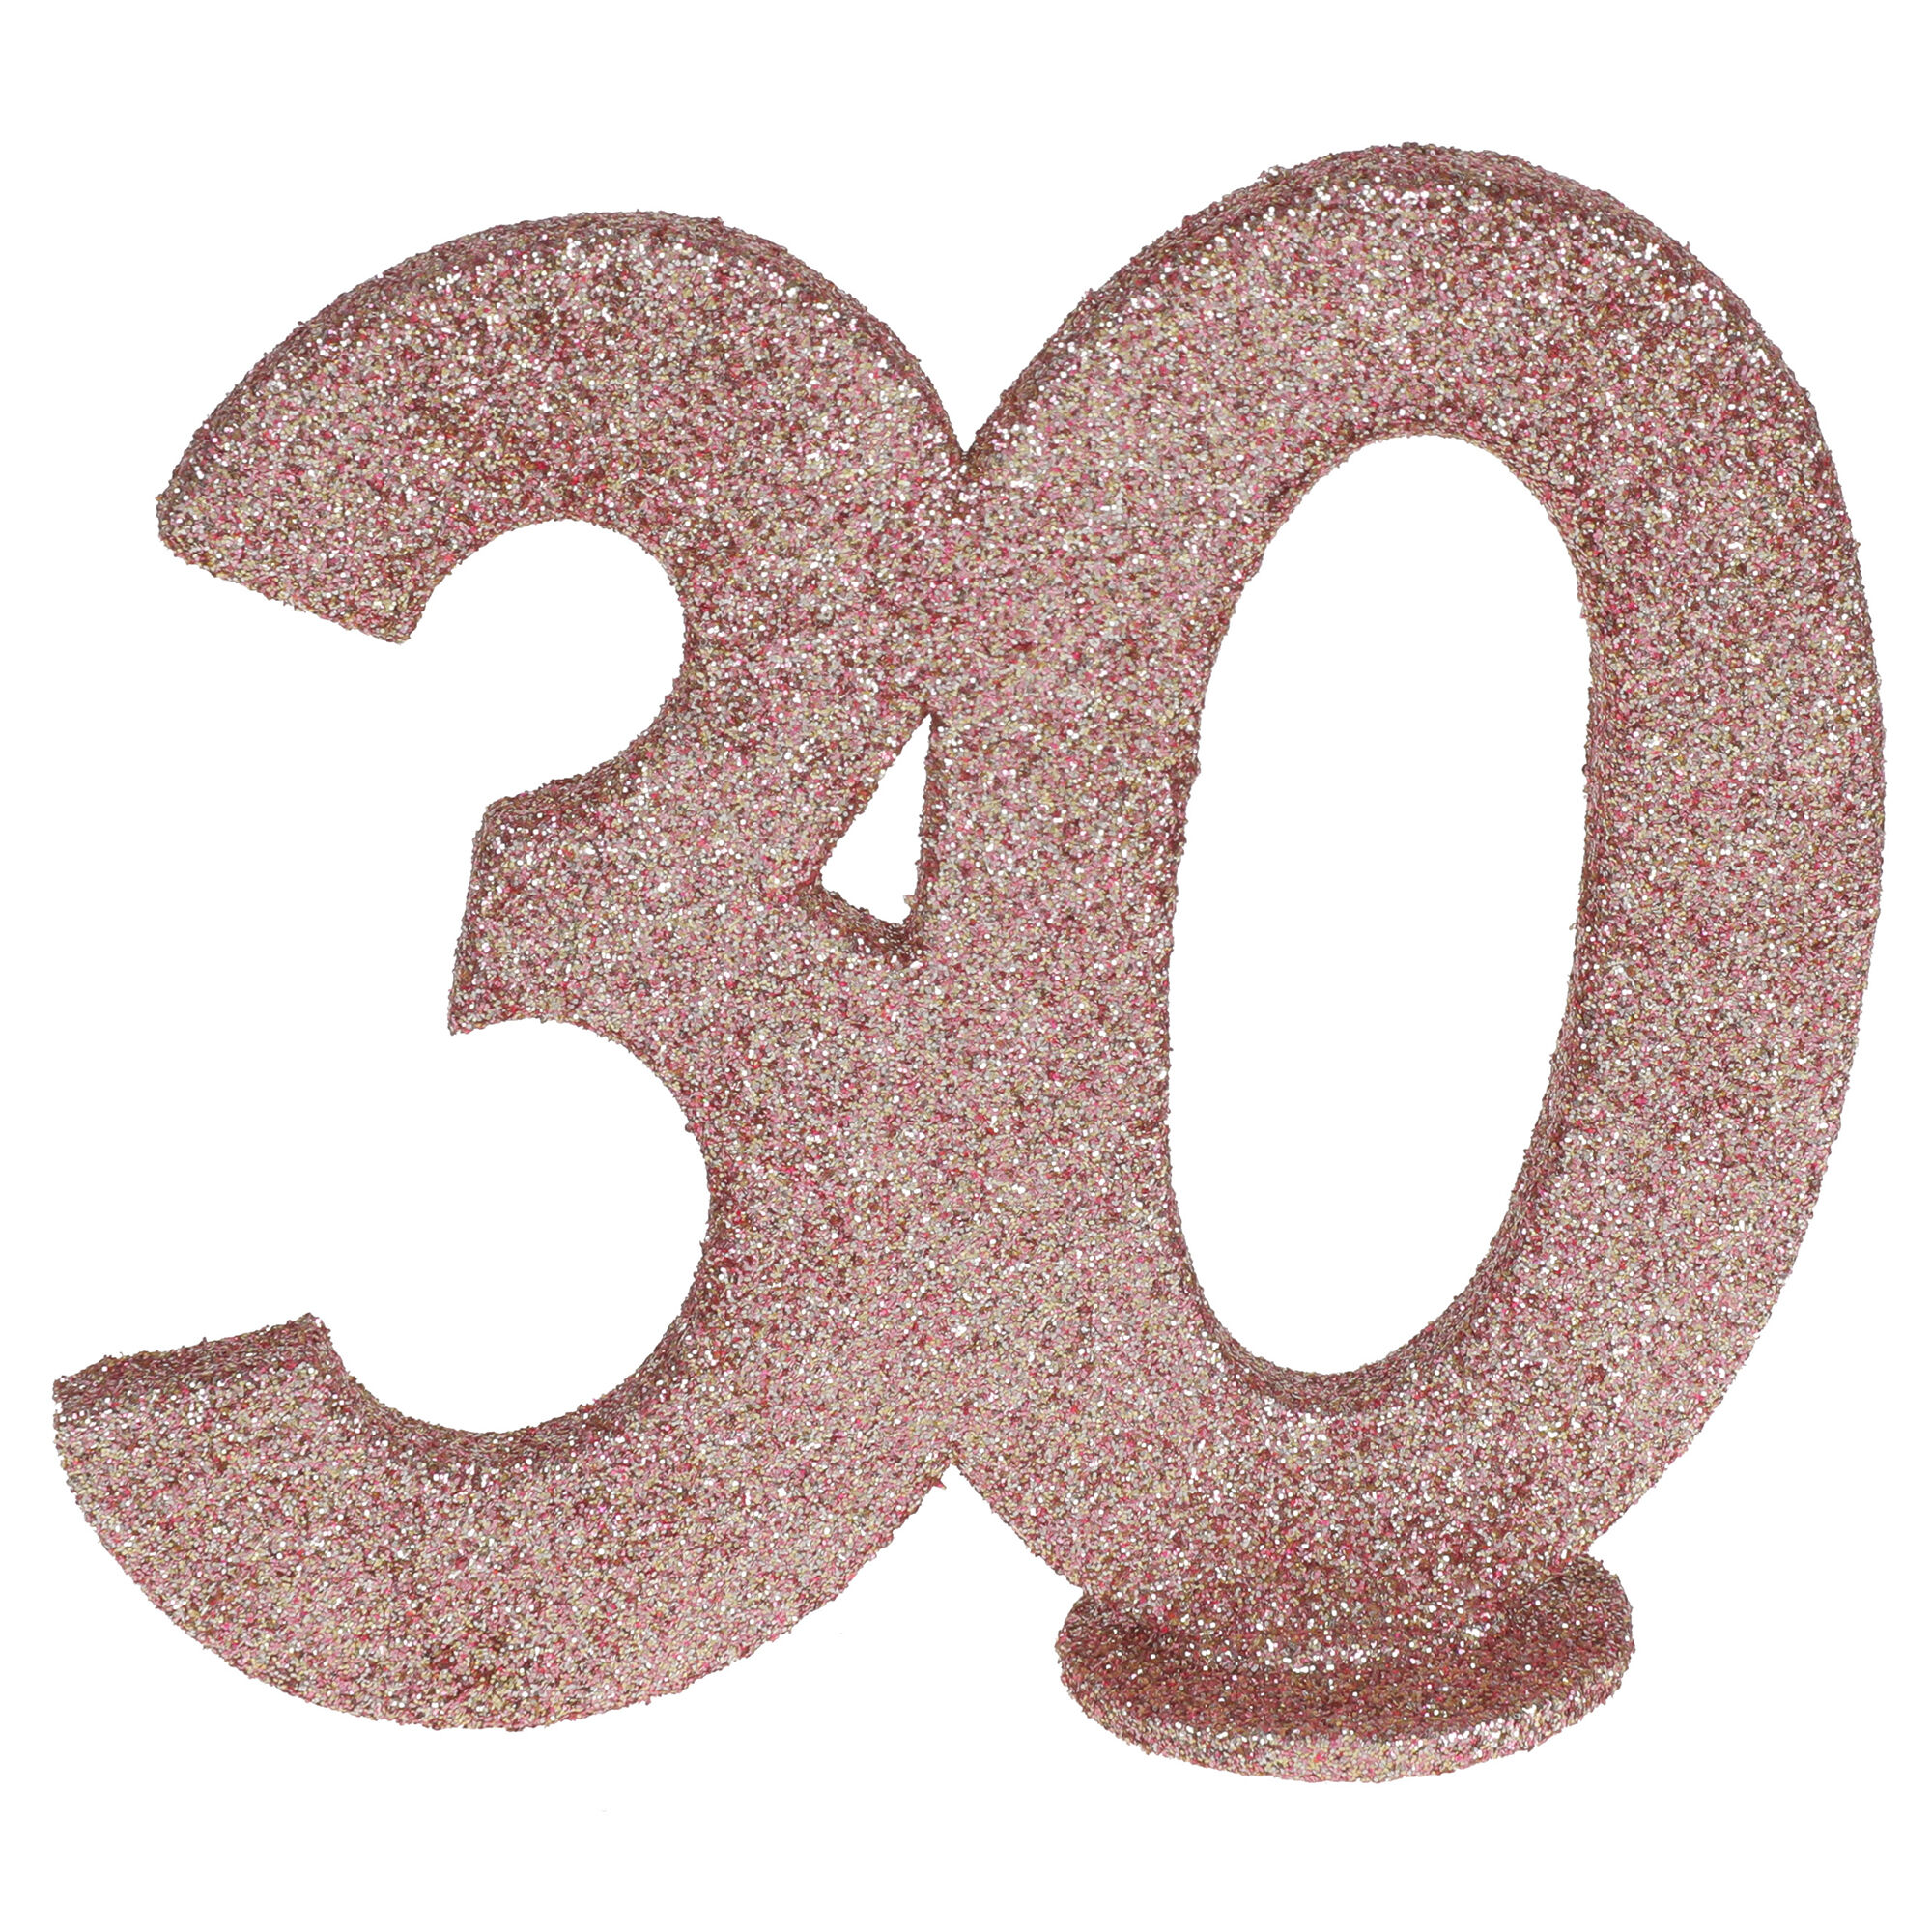 NEU Aufsteller Geburtstags-Zahl 30, glitter-ros-gold, ca. 10cm